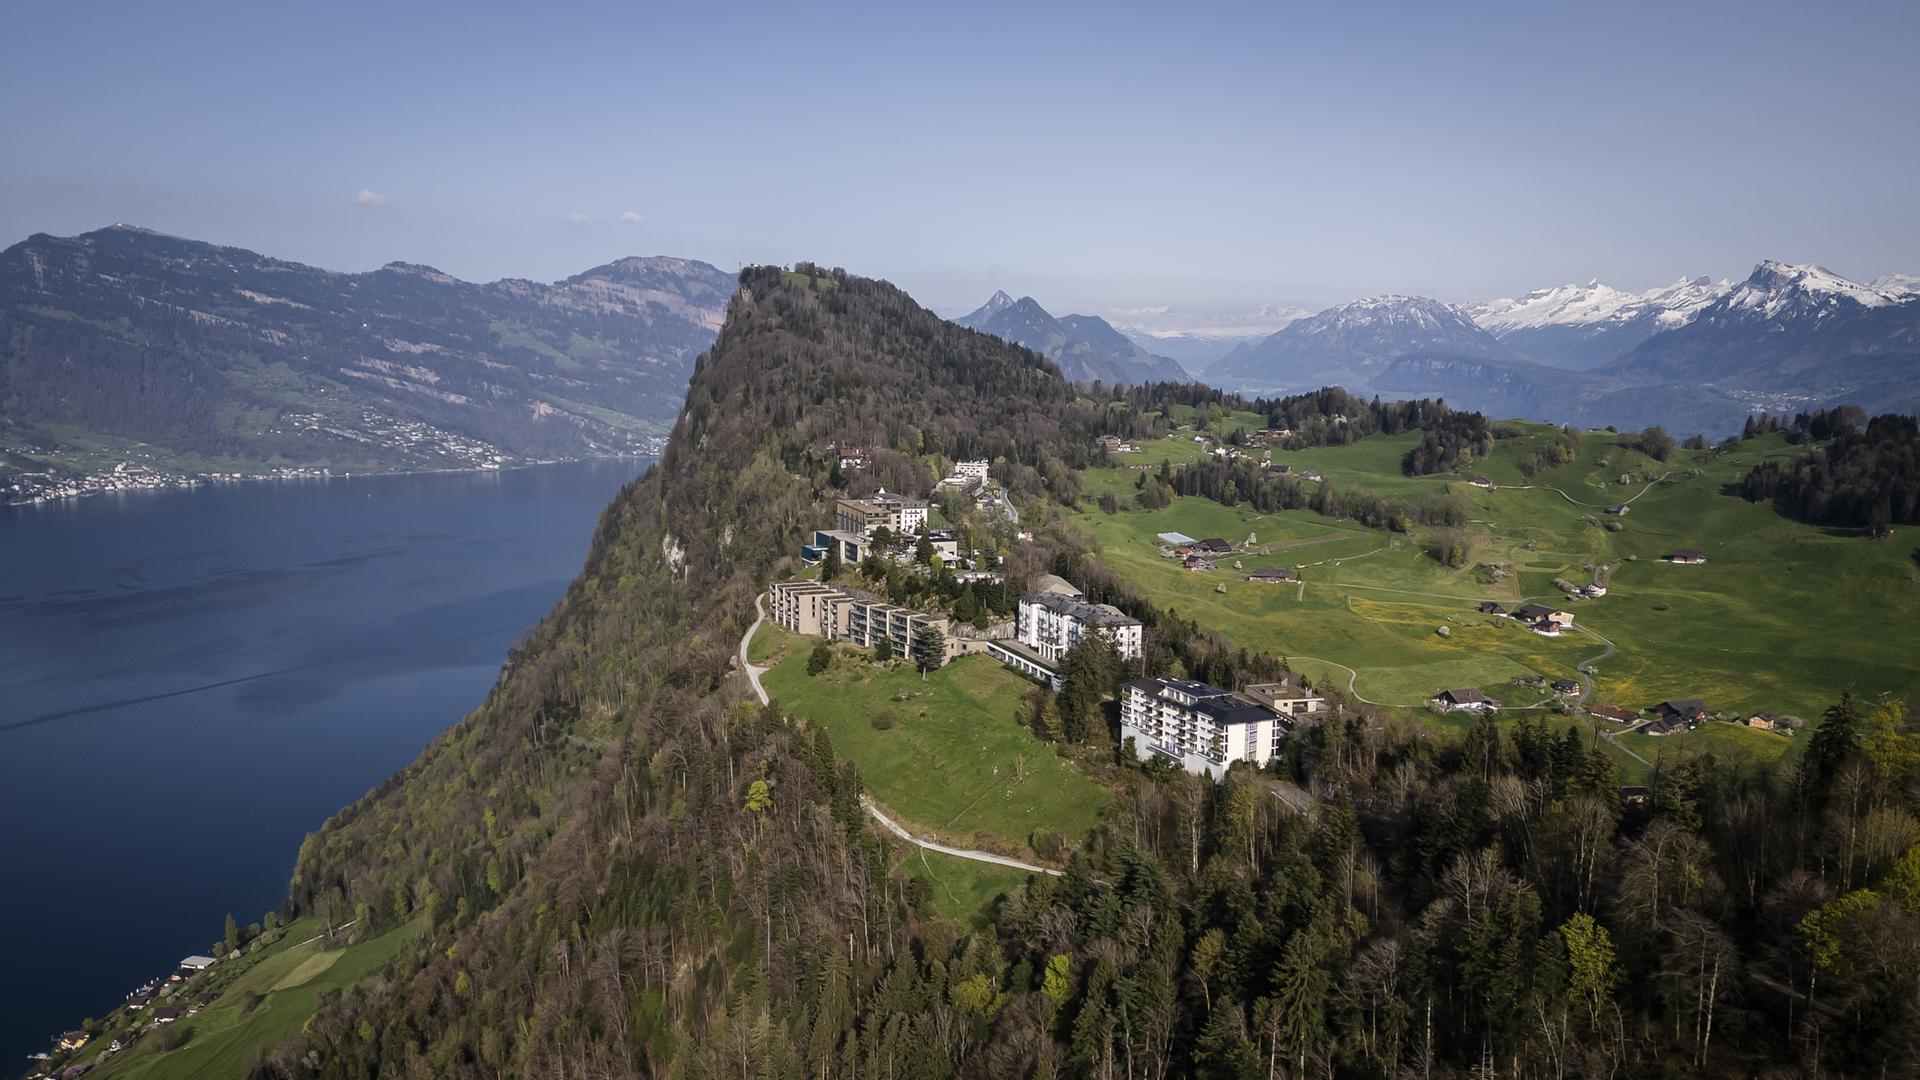 Schweiz, Obbuergen: Das Bürgenstock Resort ist auf dem Berg Bürgenstock oberhalb des Vierwaldstättersees zu sehen. 